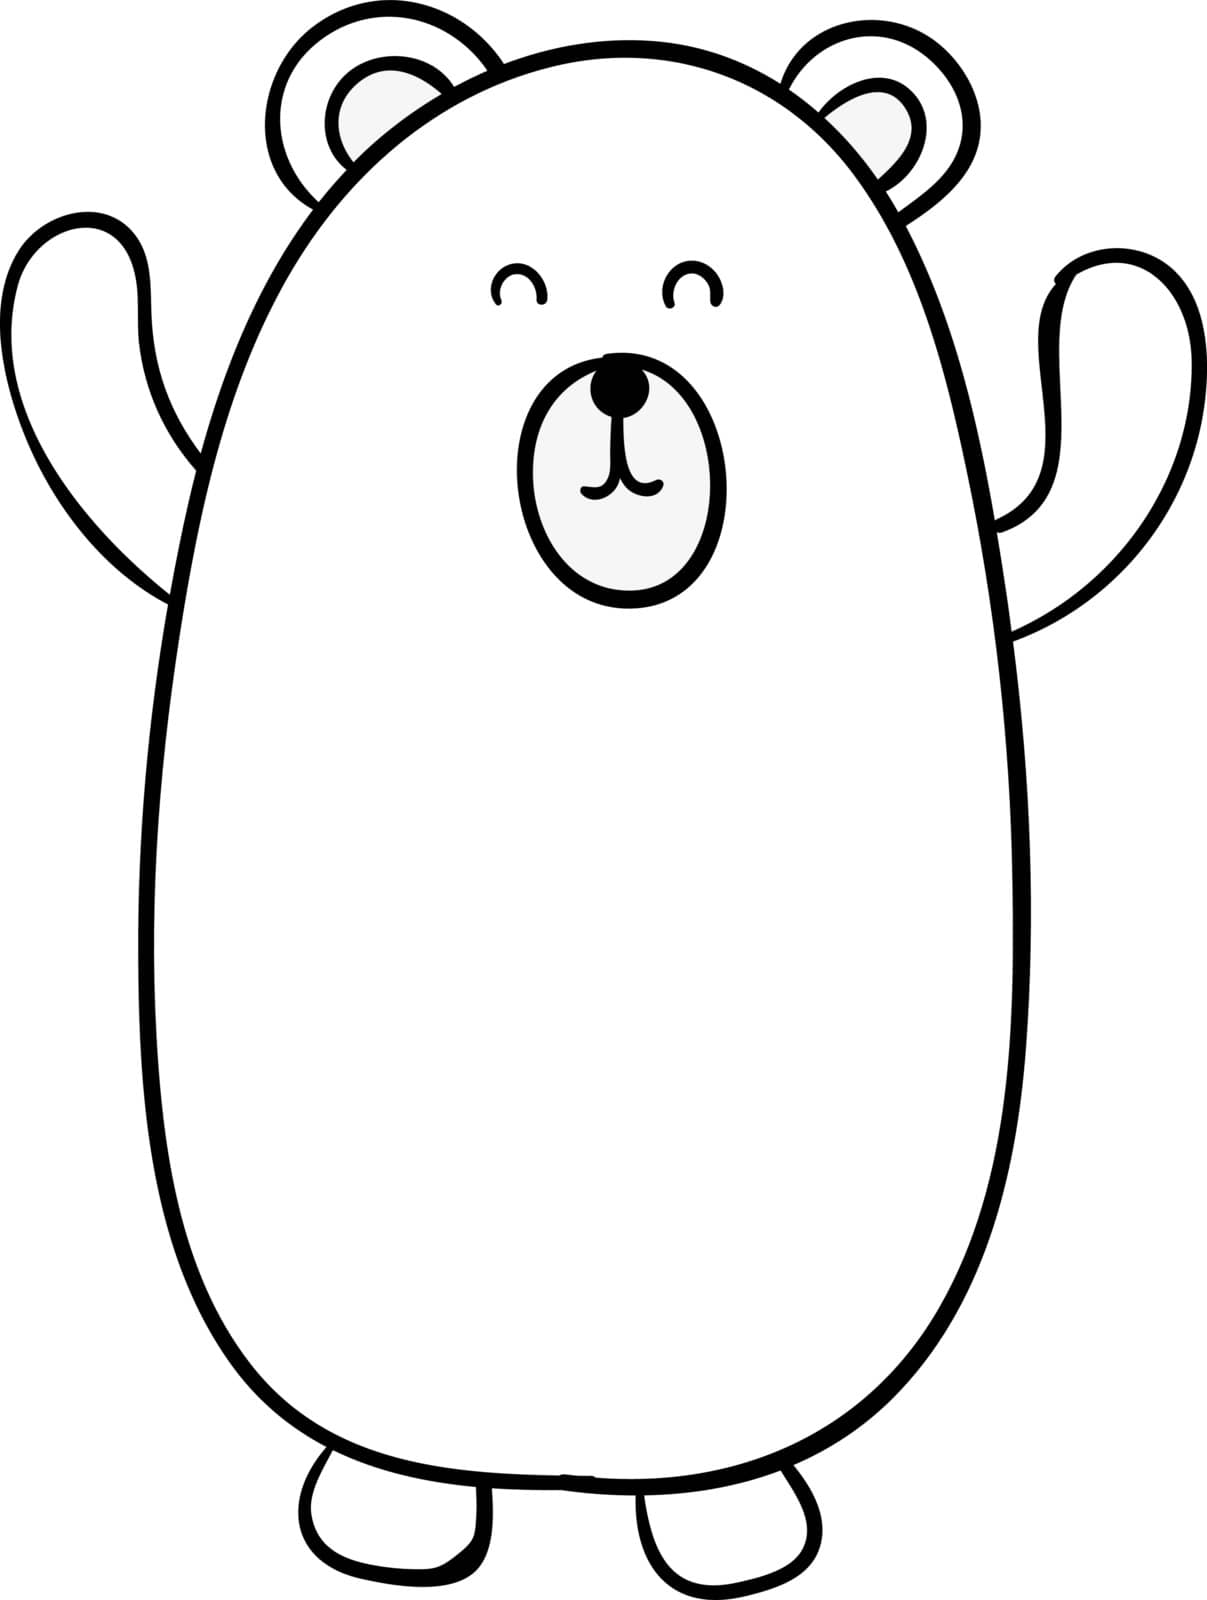 White bear, illustration, vector on white background.